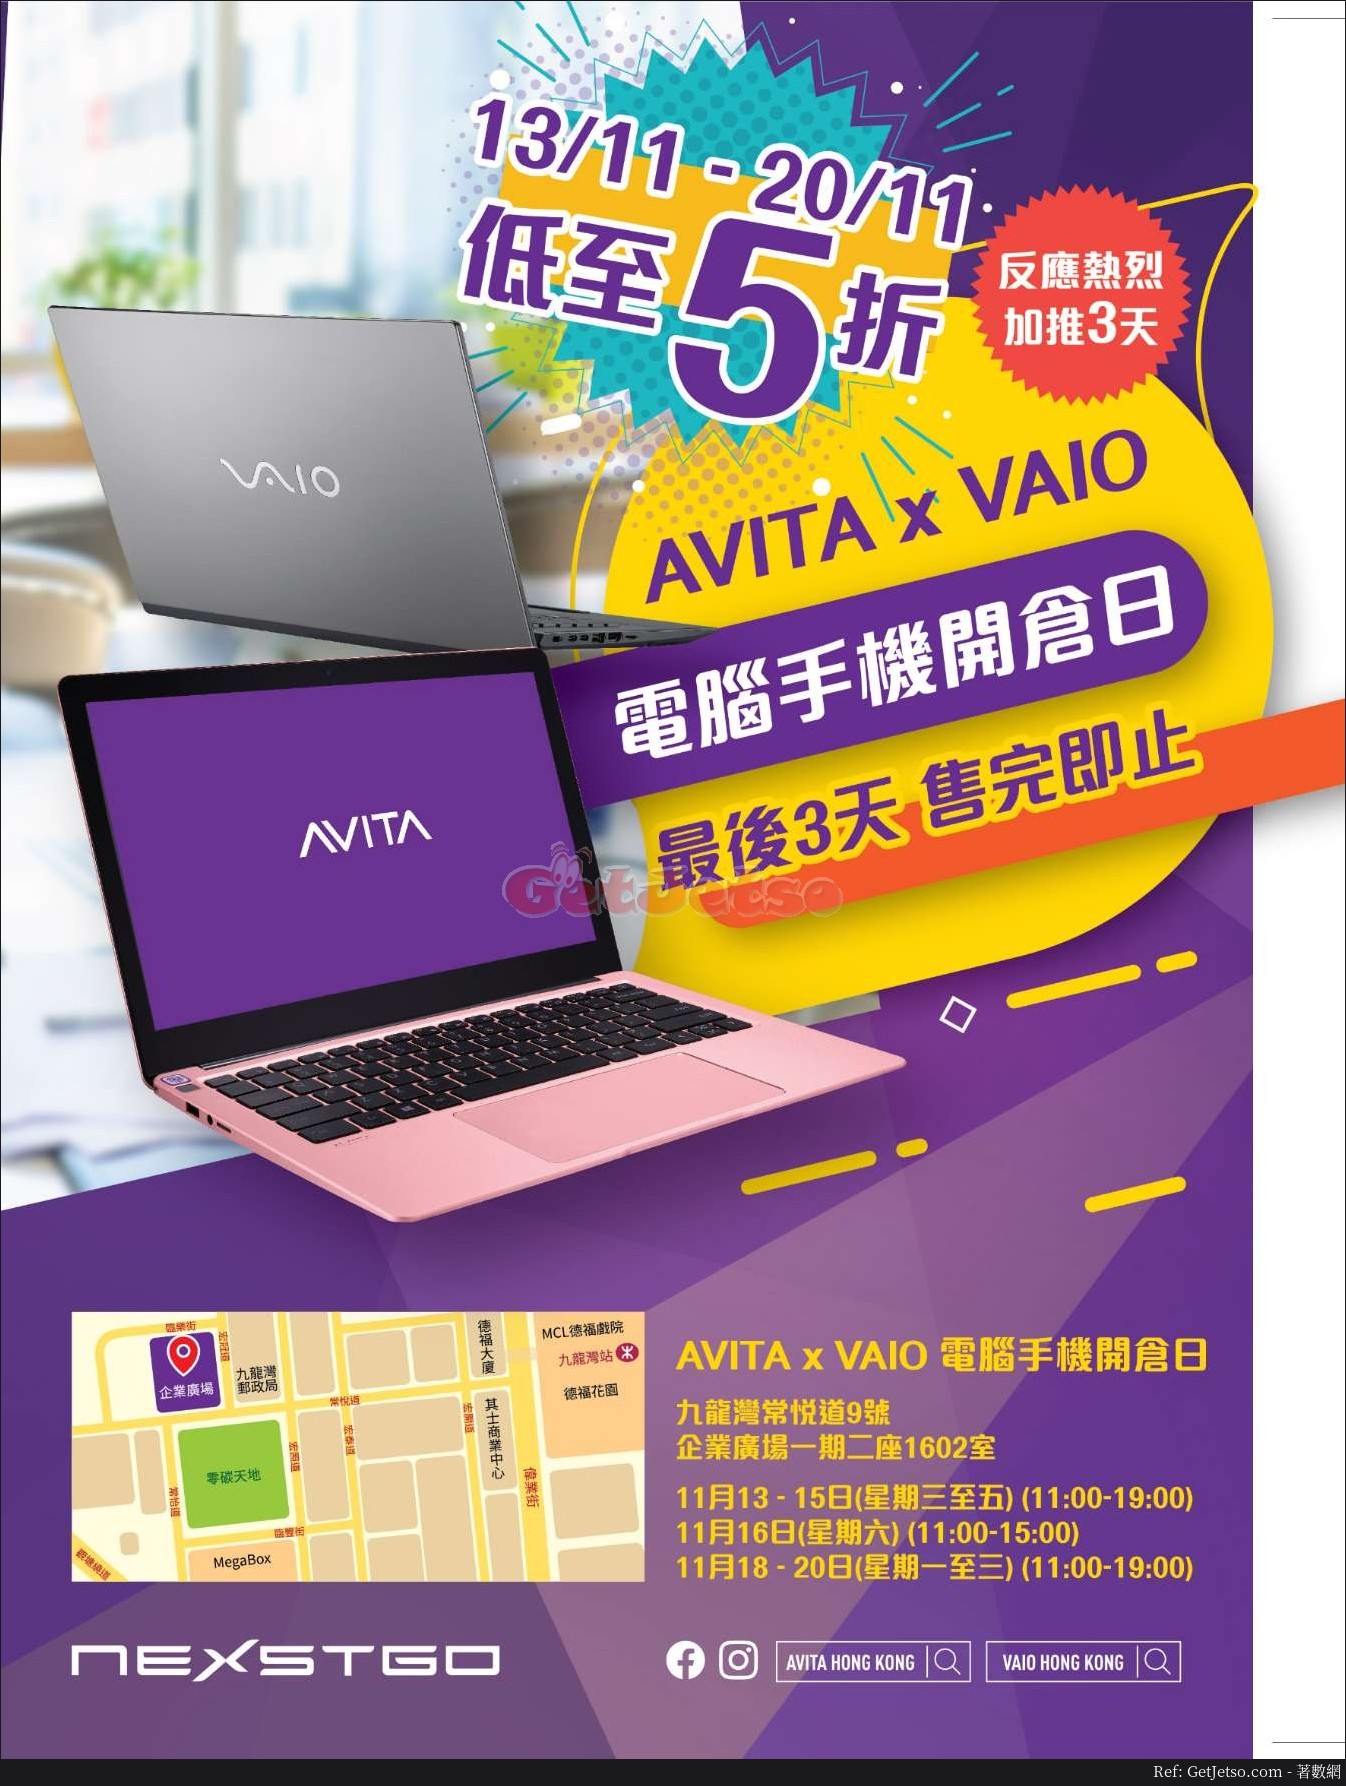 AVITA x VAIO 低至5折電腦手機開倉優惠(至19年11月20日)圖片1